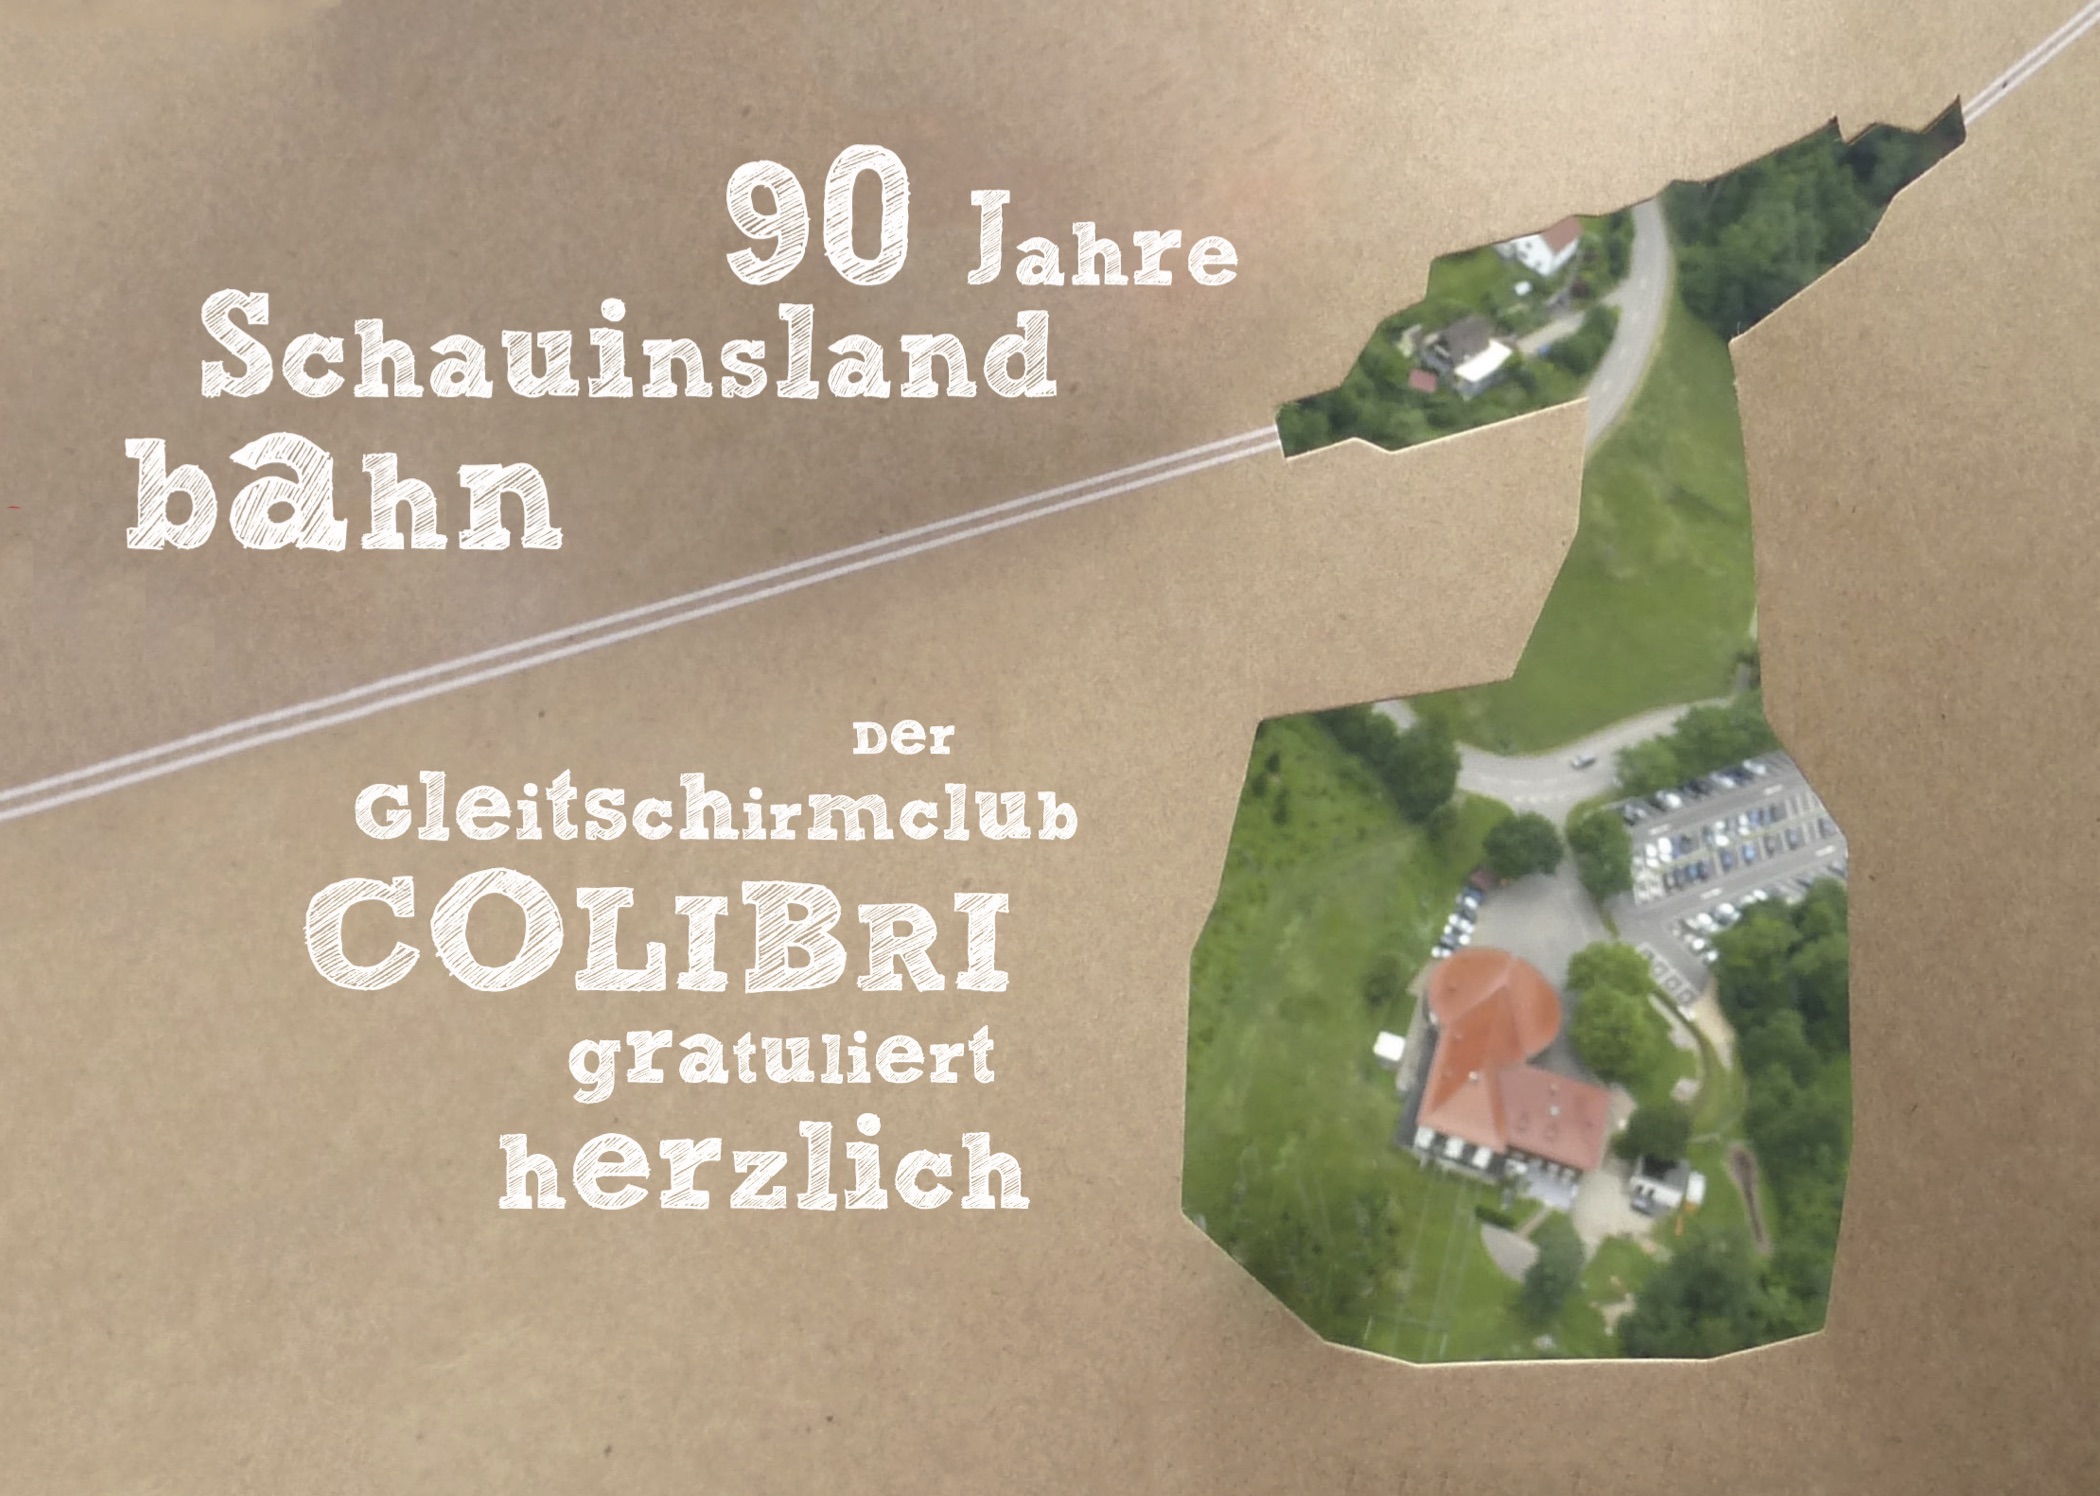 90 Jahre Schauinslandbahn – Wir gratulieren!